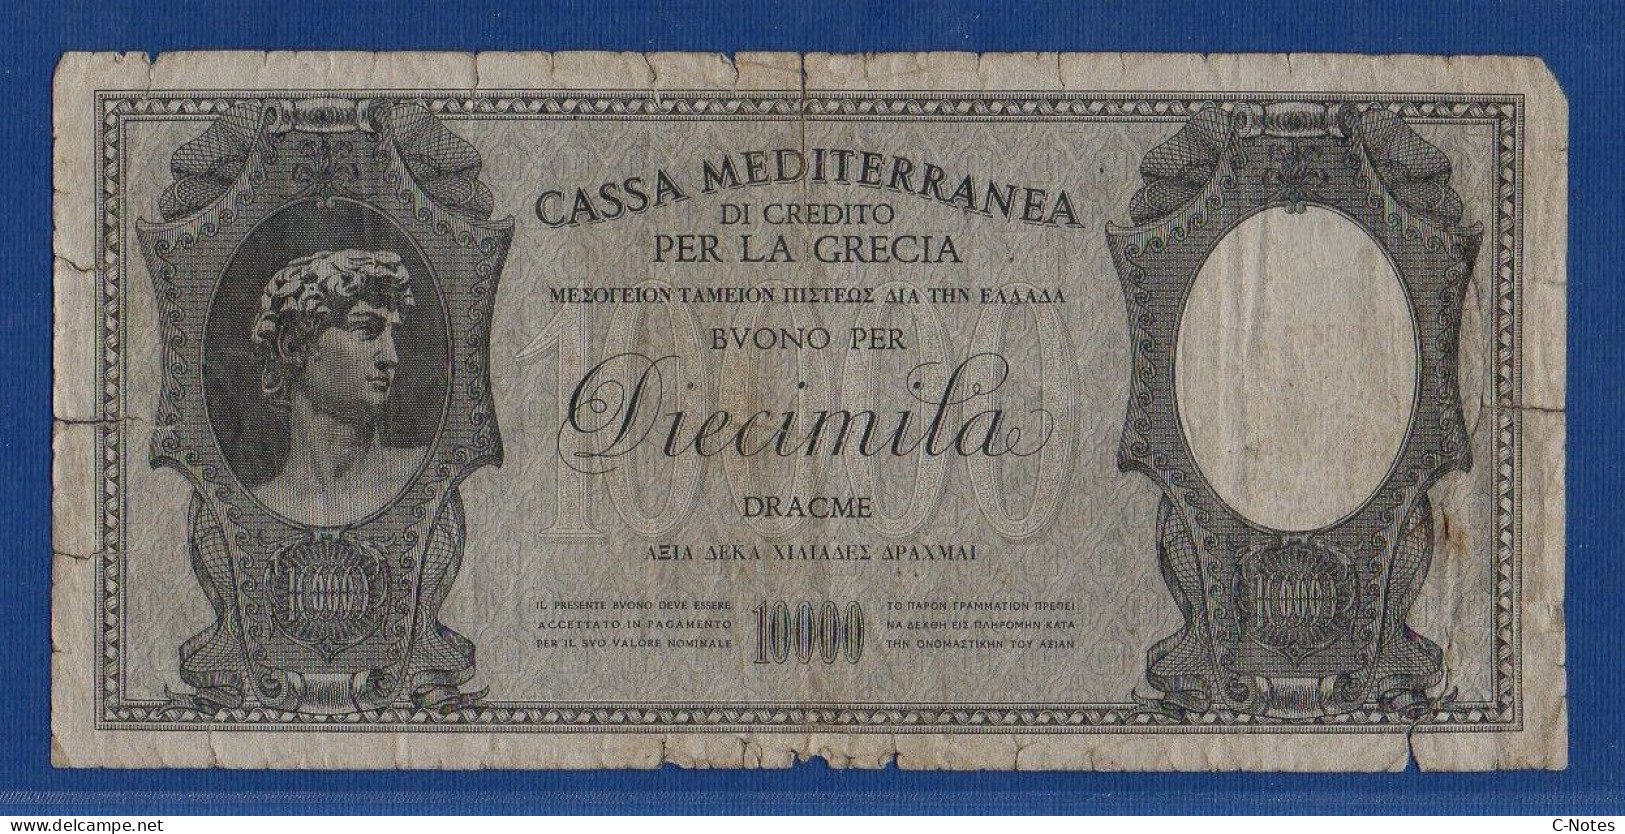 GREECE - Cassa Mediterranea Di Credito - P.M8 – 10000 DRACME ND 1941 - CIRCULATED - SERIE 0001 241.362 - Ocupación Italiana Egenea